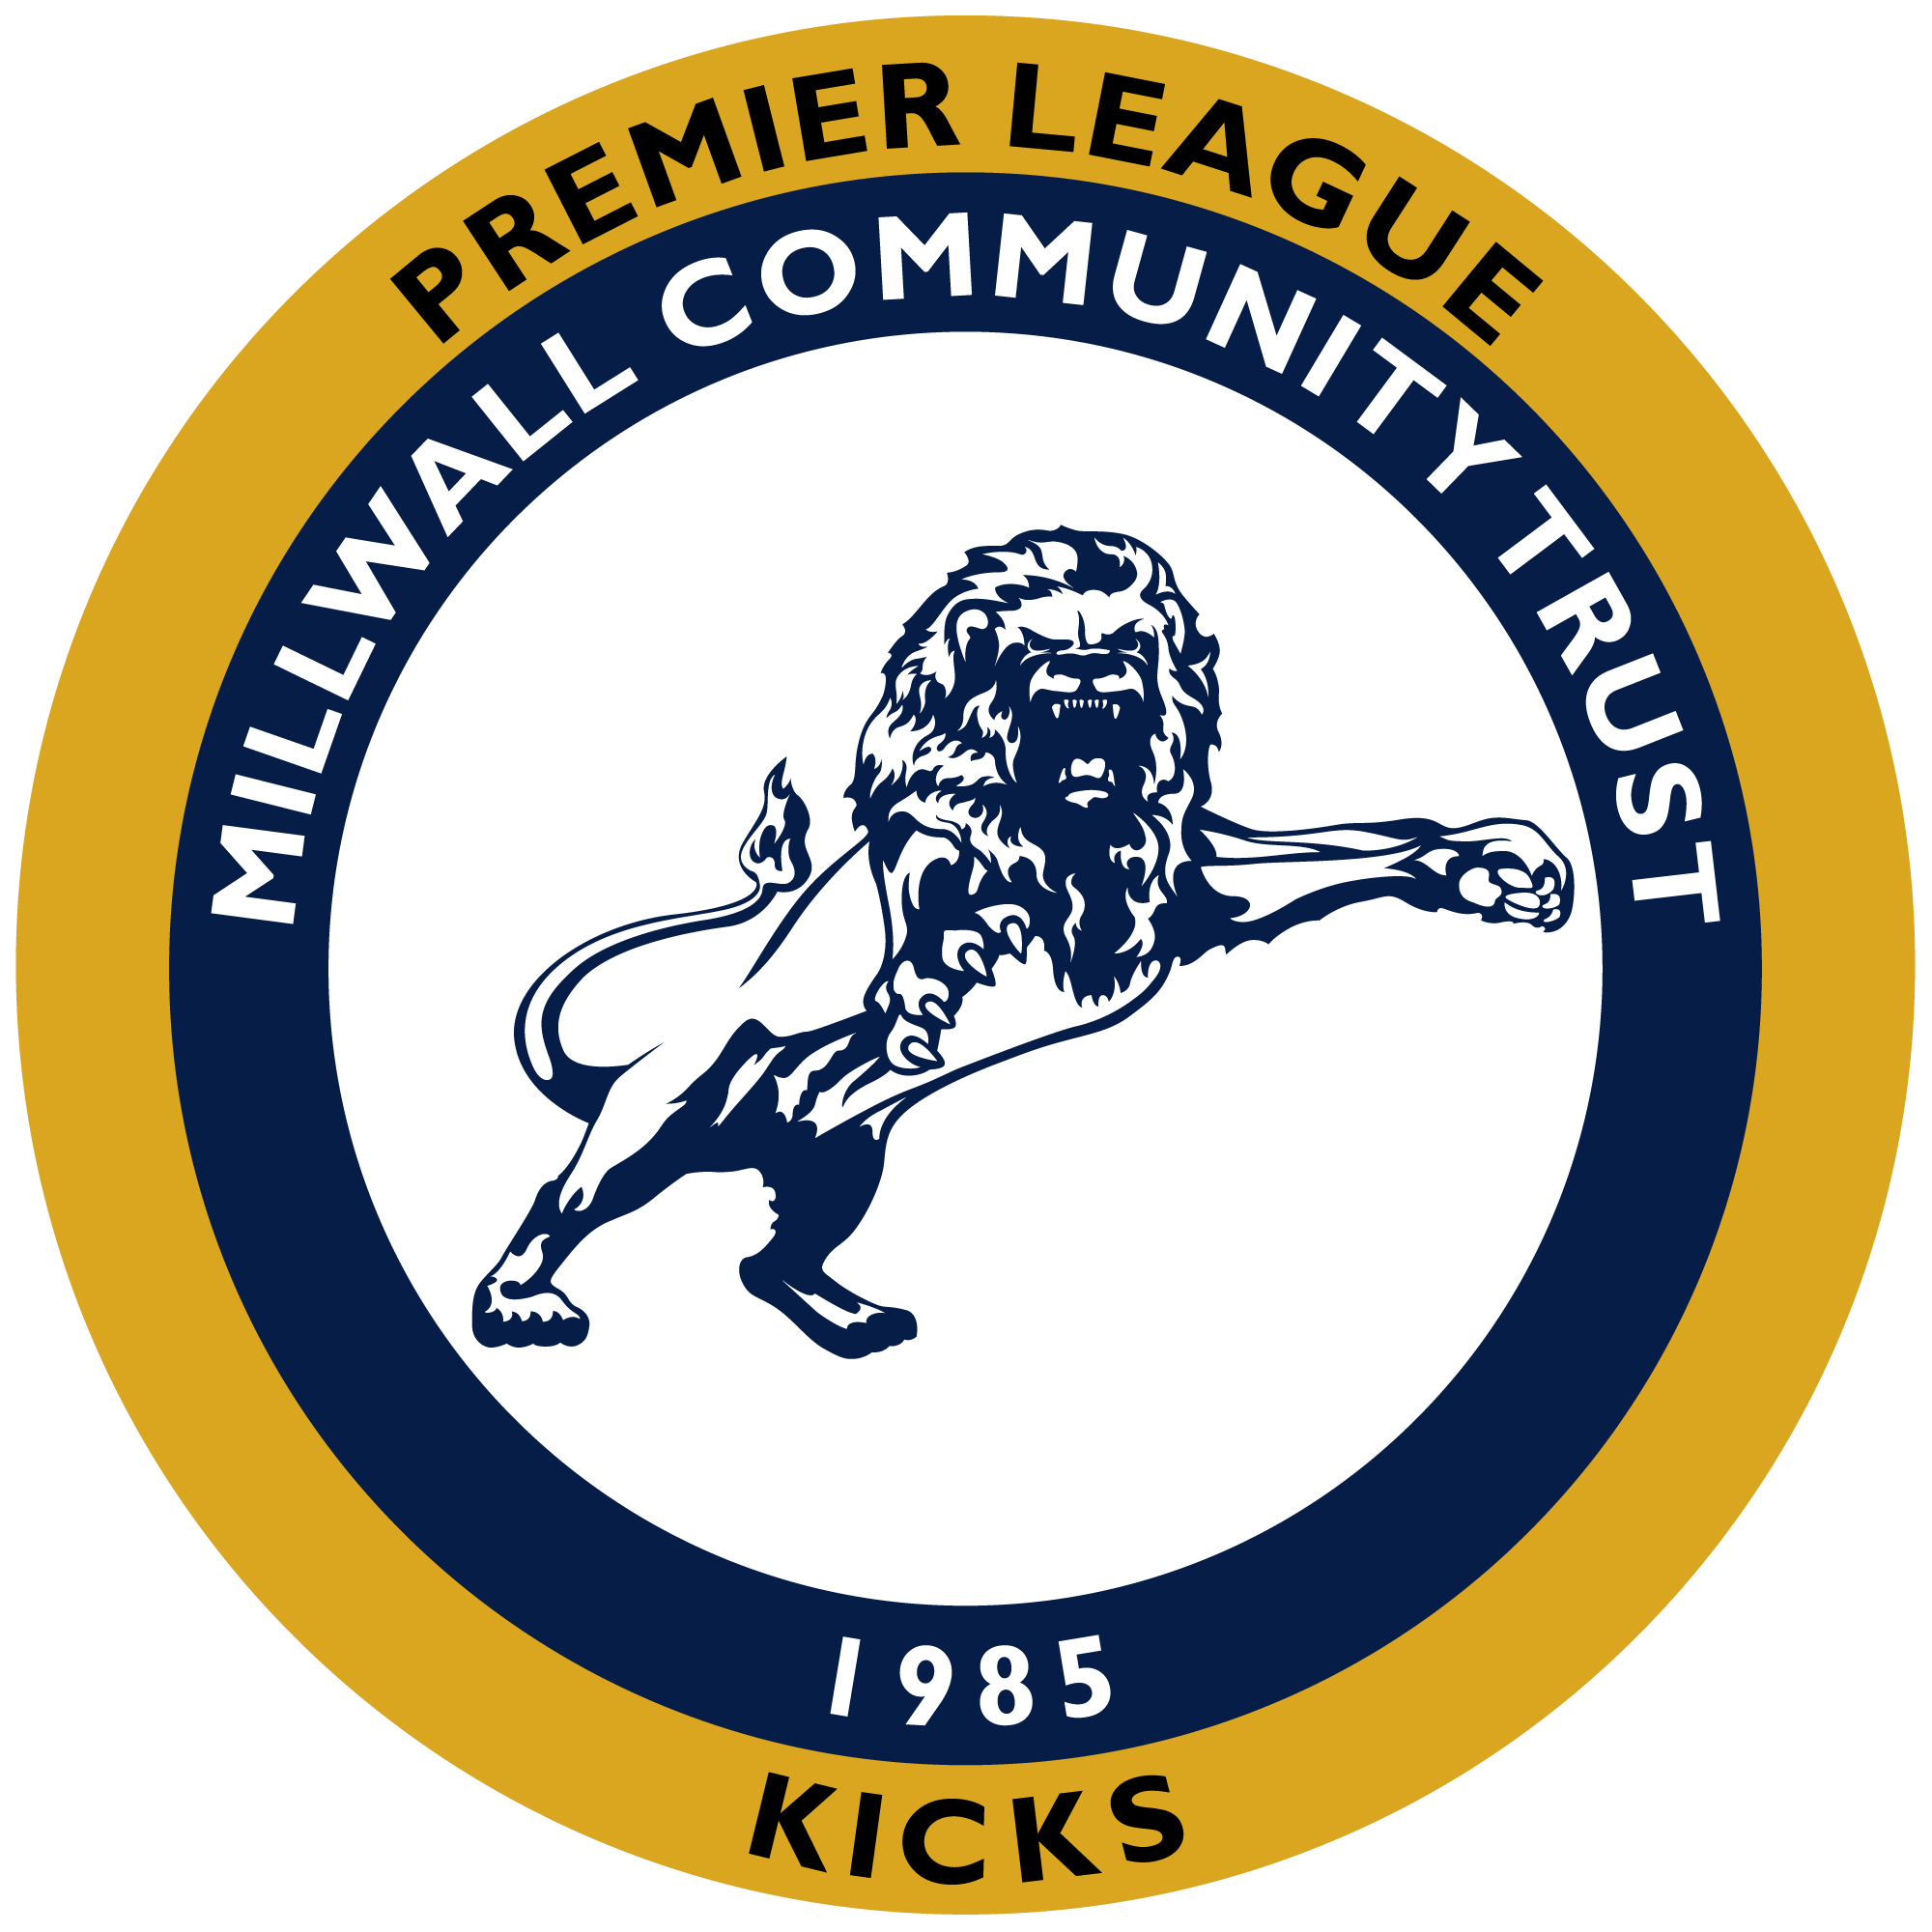 Millwall Community Trust - Millwall Premier League Kicks Session Registration